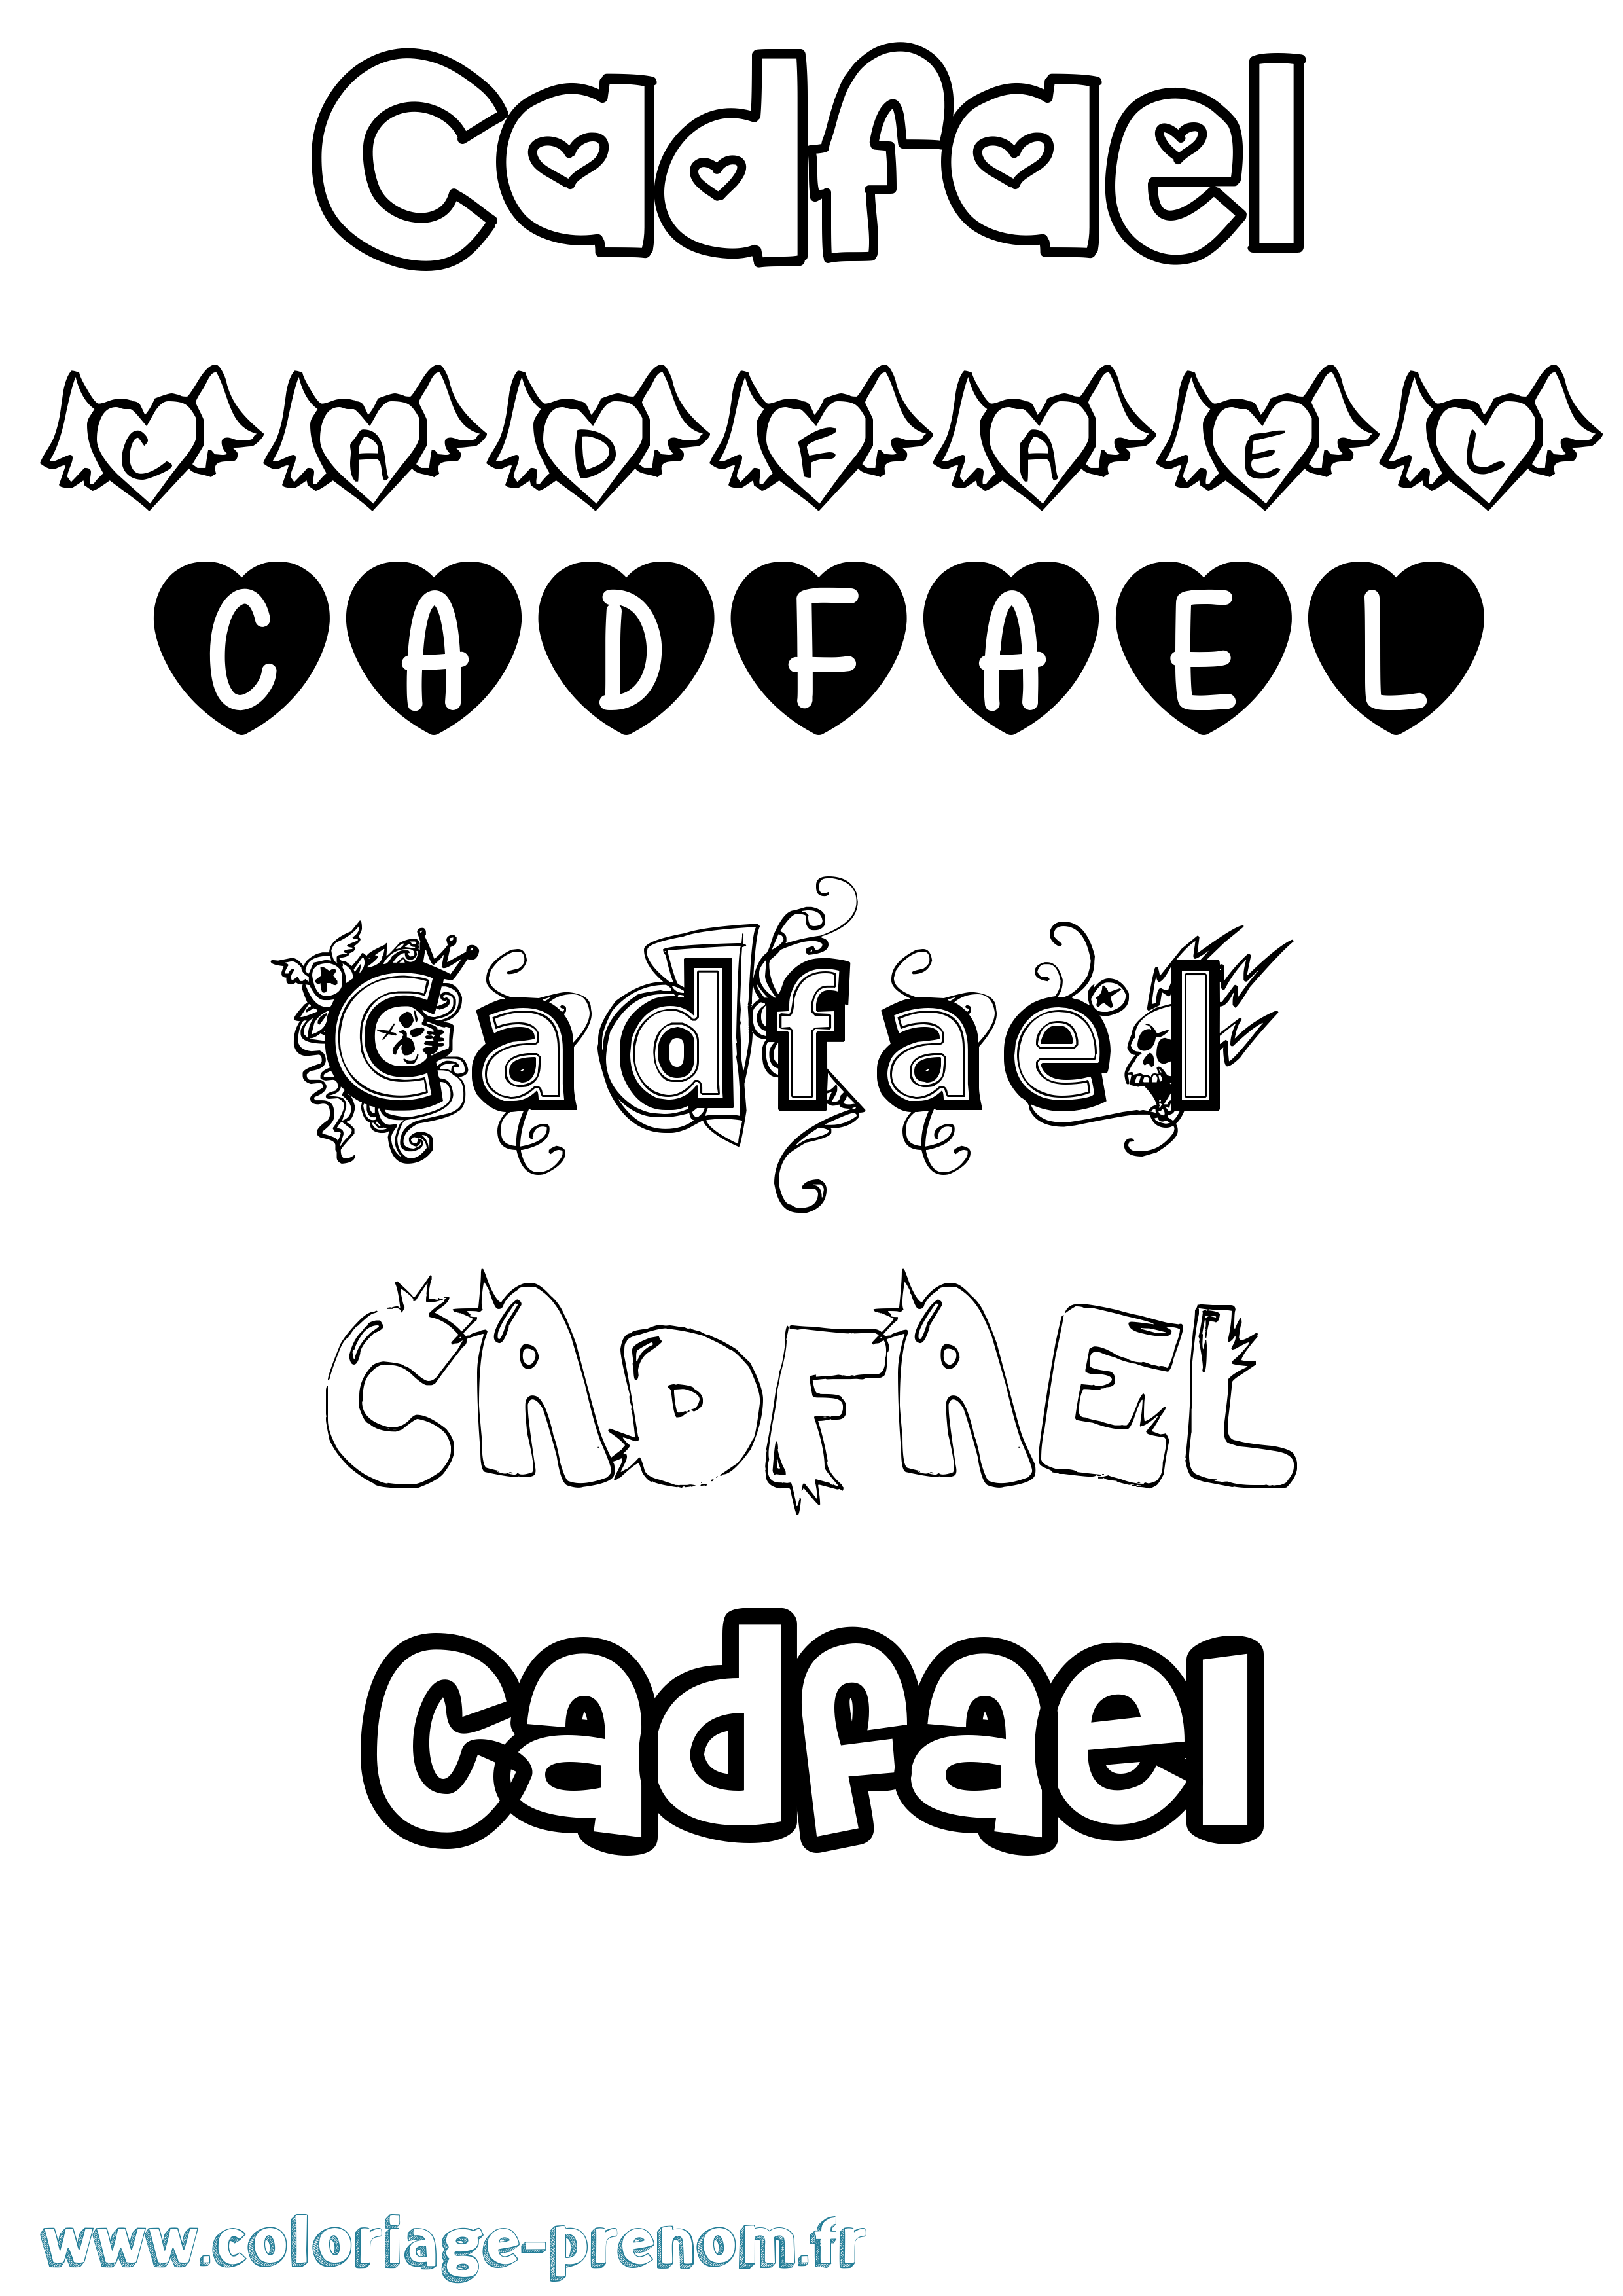 Coloriage prénom Cadfael Girly